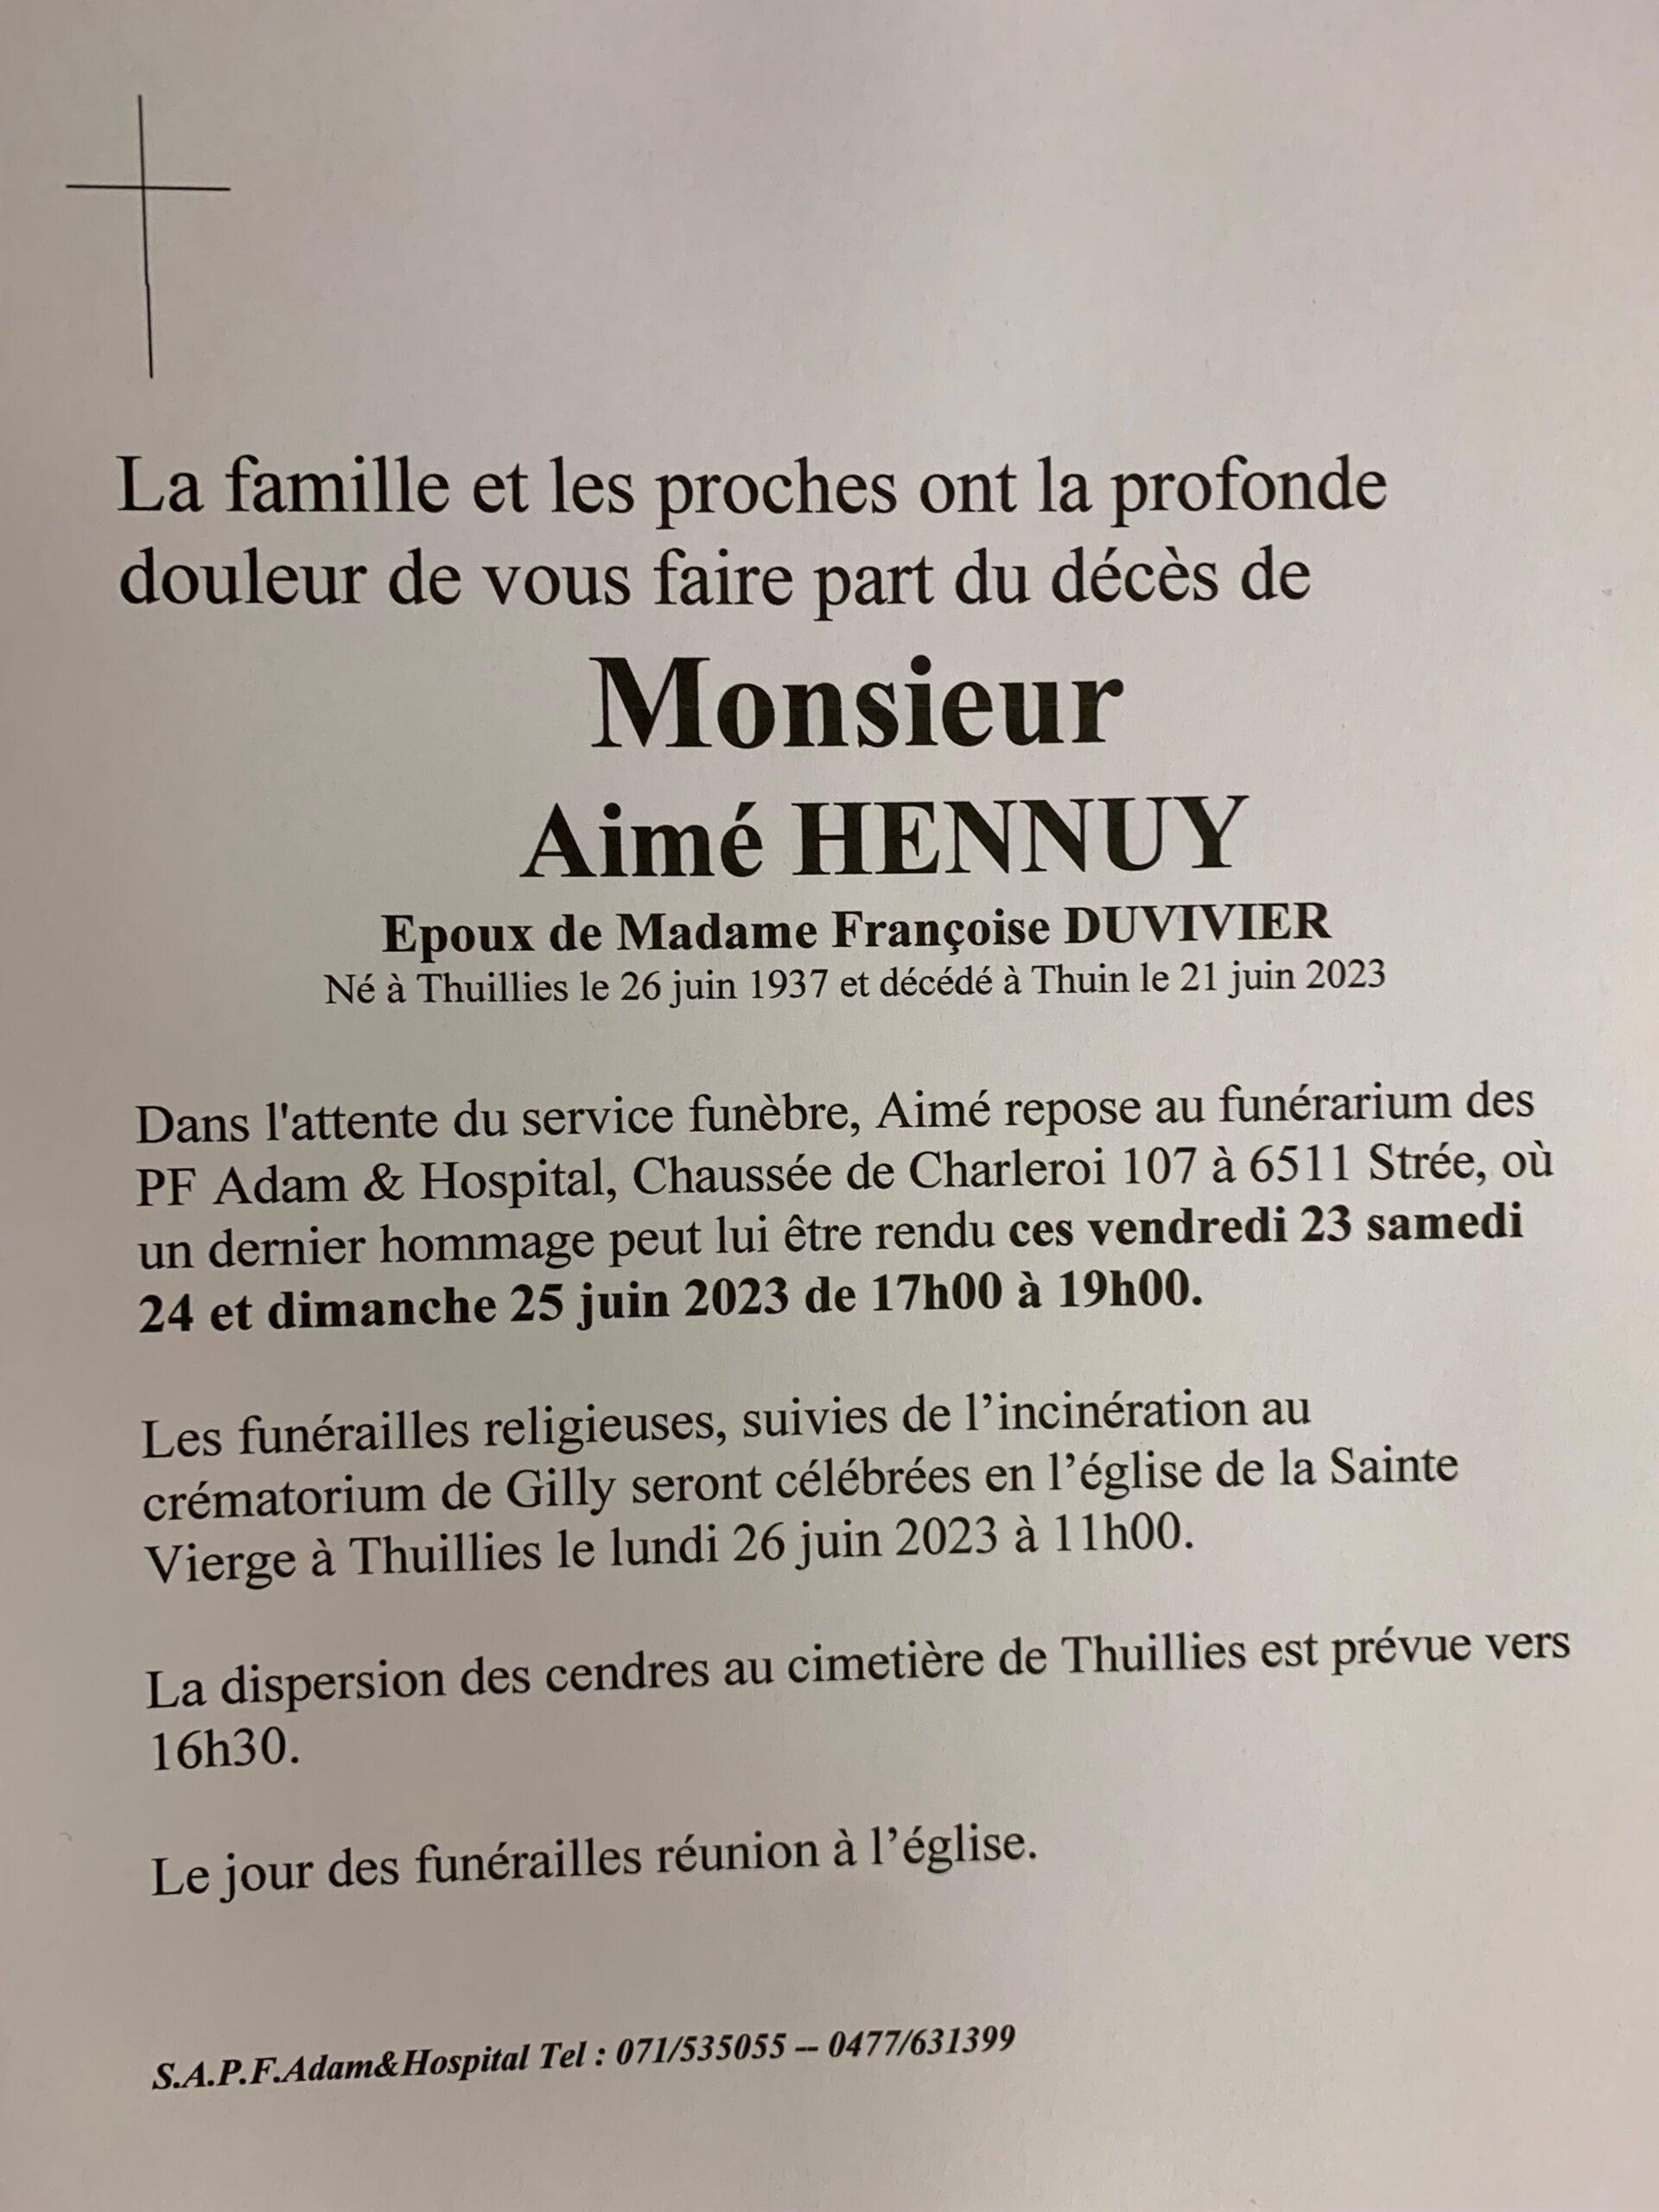 Monsieur Aime HENNUY scaled | Funérailles Adam Hospital